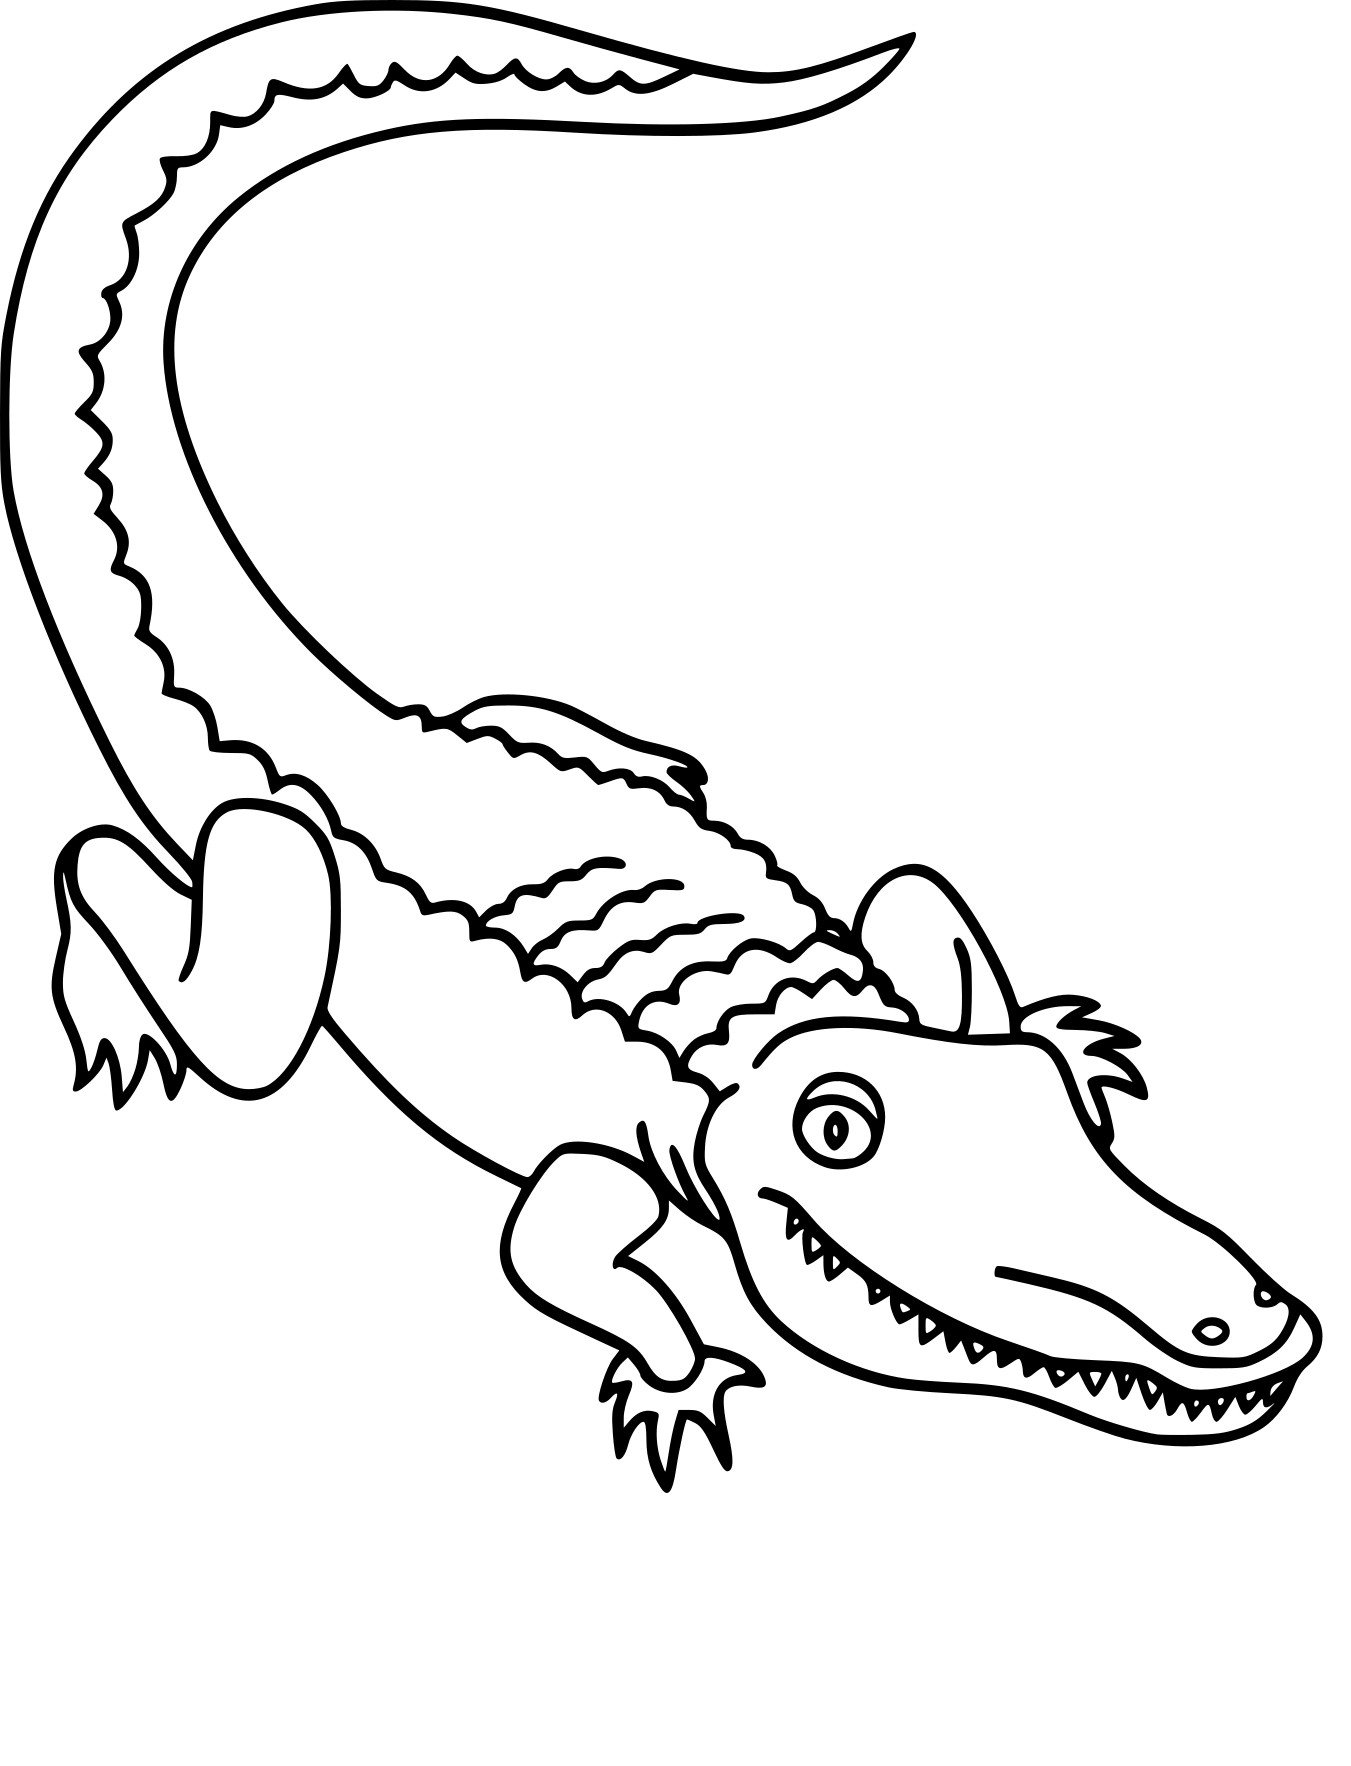 Крокодил раскраска для детей